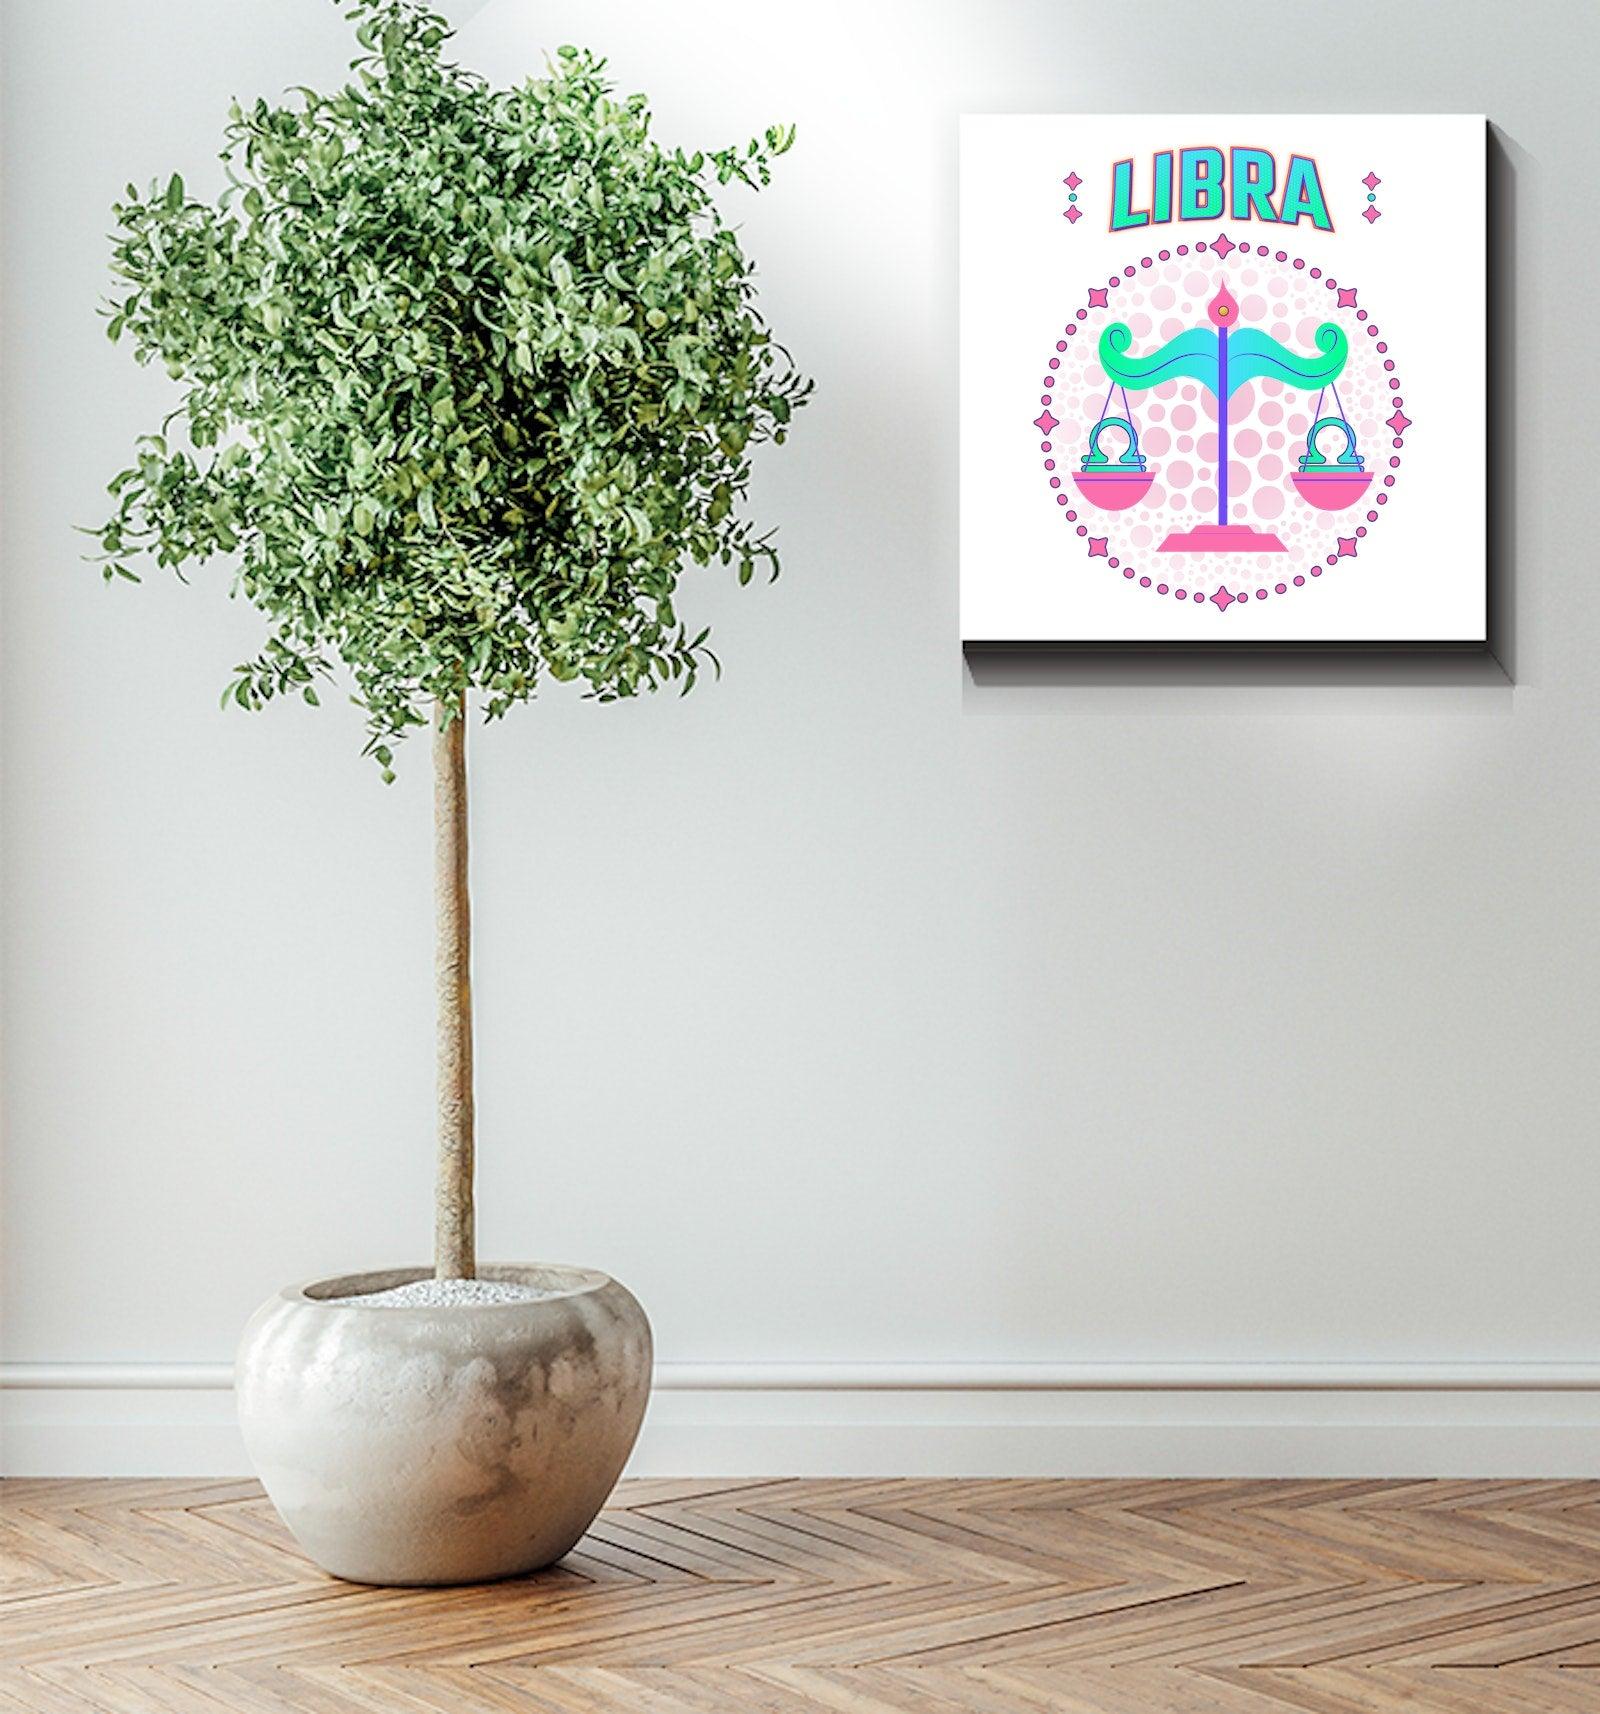 Libra Wrapped Canvas | Zodiac series 1 - Beyond T-shirts